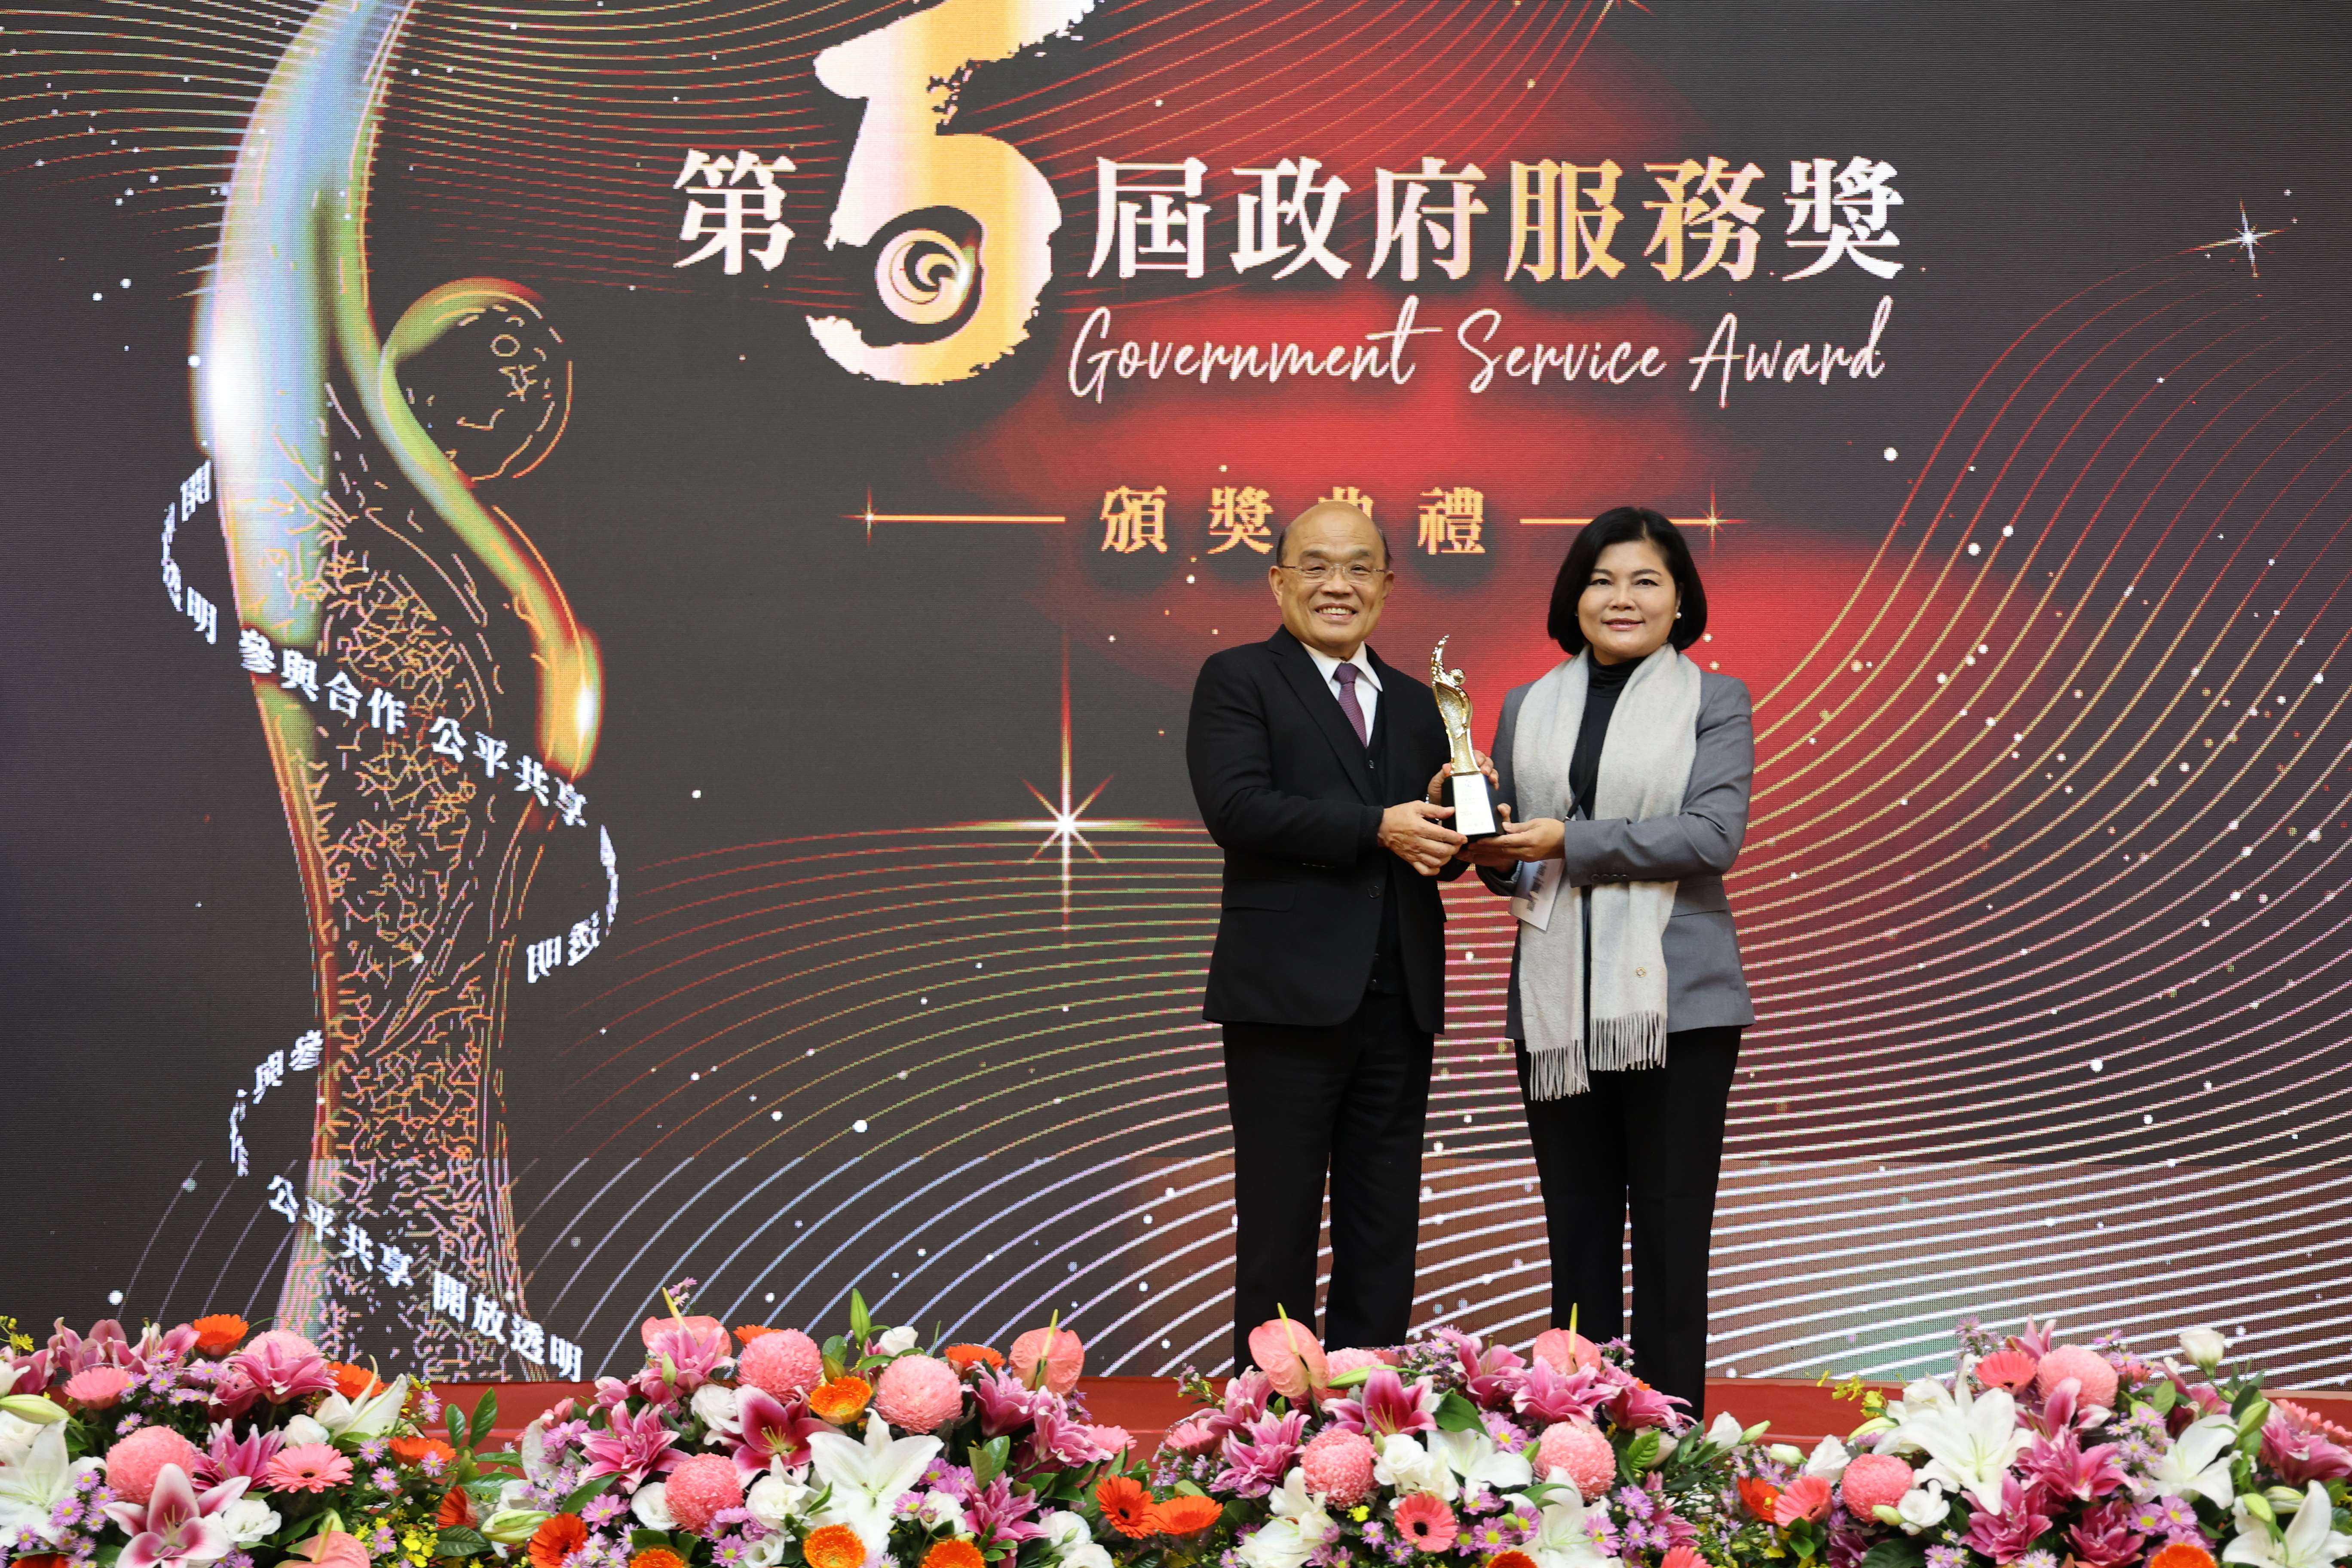 雲林縣榮獲行政院第5屆政府服務獎2獎項，張麗善親自帶隊出席頒獎典禮領獎。